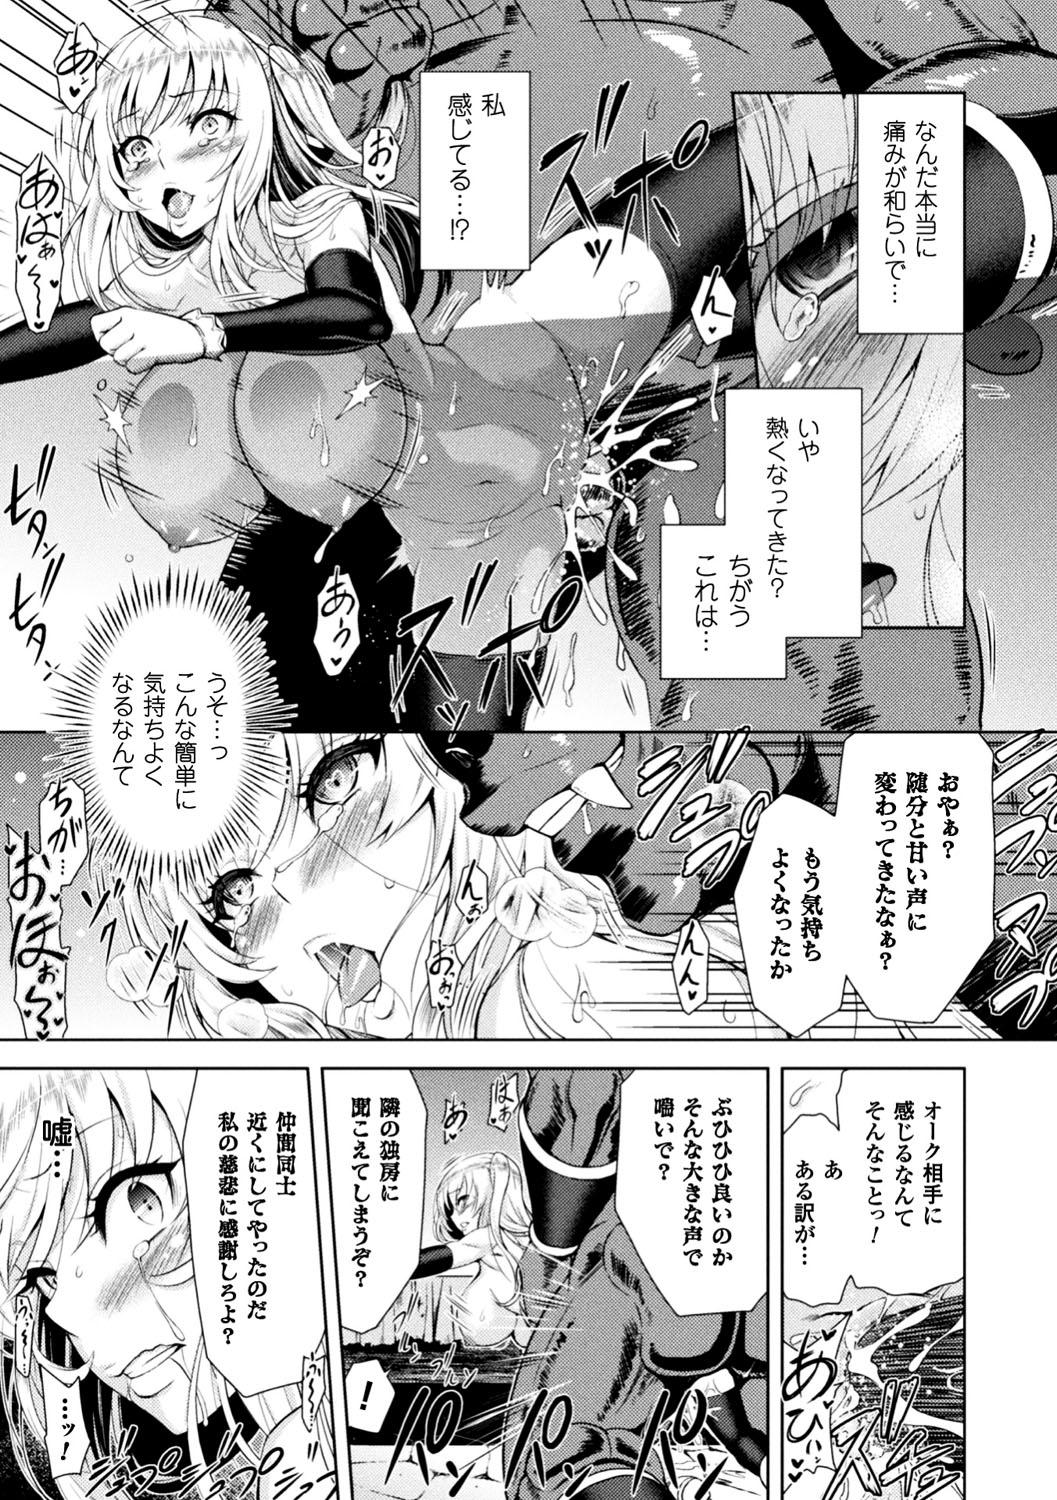 Seigi no Heroine Kangoku File Vol. 13 22